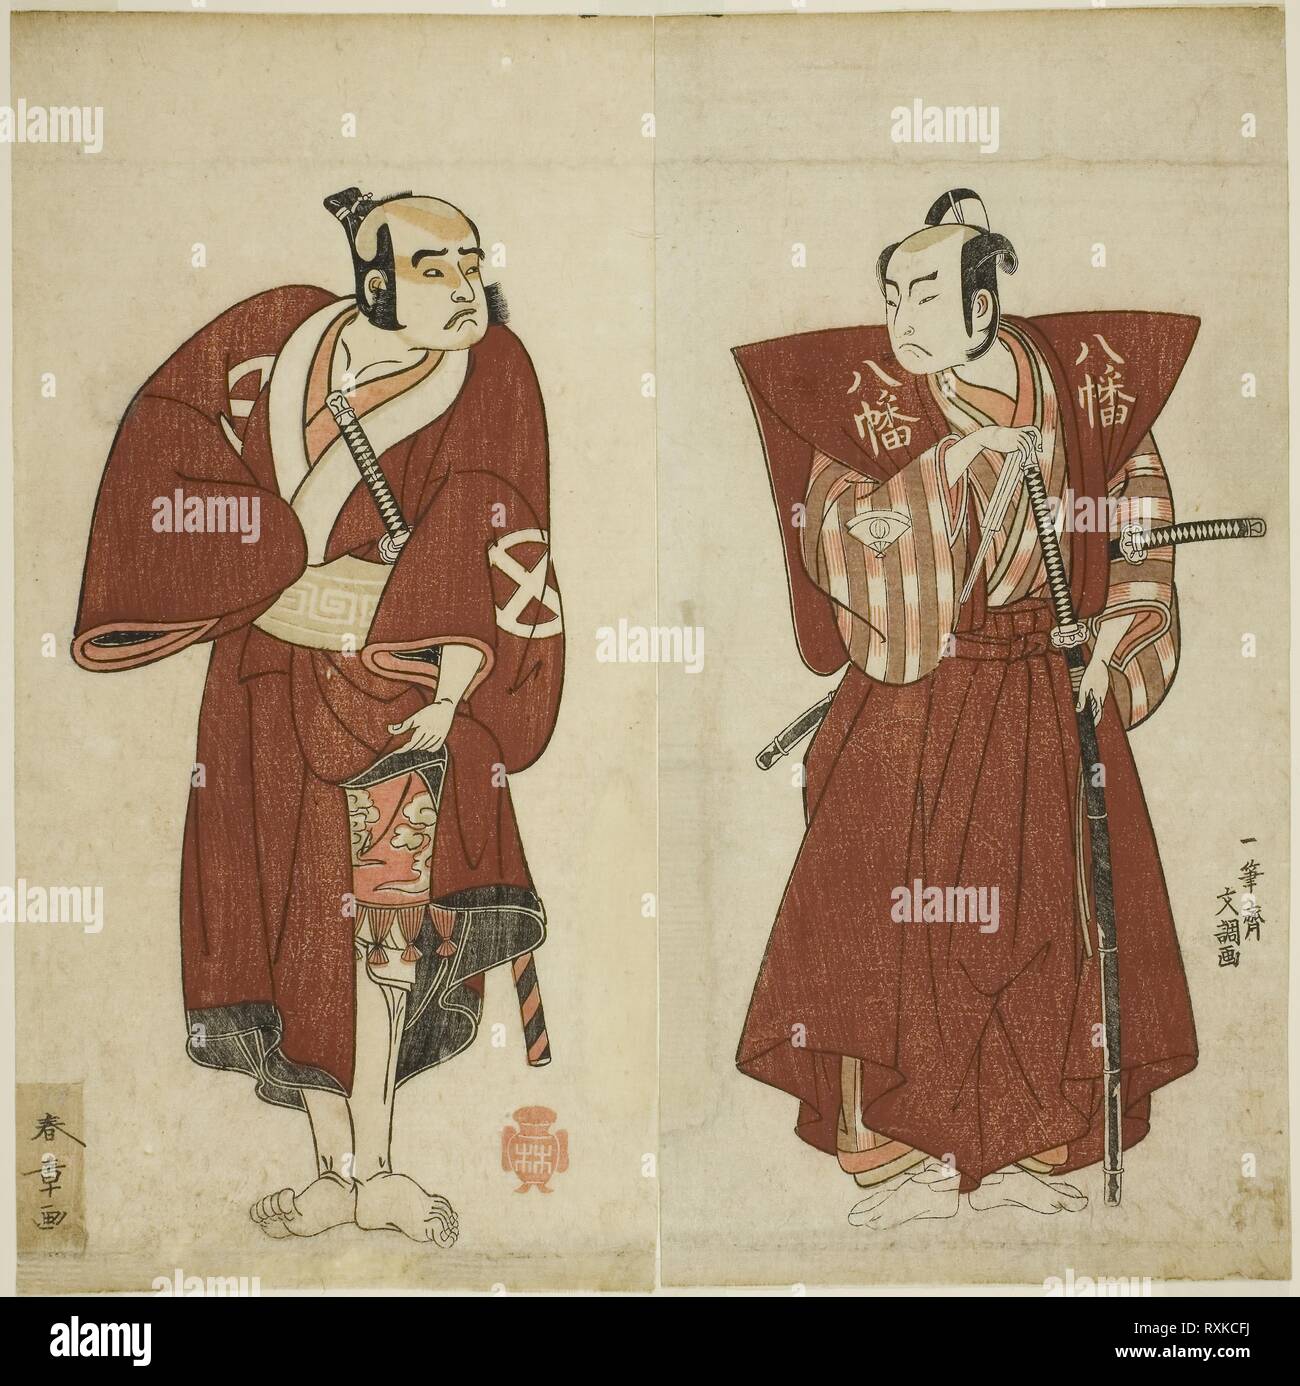 Gli attori Onoe Matsusuke I come Yawata no Saburo (a destra), e Otani Tomoemon I come Yakko Emohei (sinistra), nel gioco Myoto-giku Izu no Kisewata, eseguita presso il Teatro Ichimura nell'undicesimo mese, 1770. Katsukawa Shunsho; Giapponese, 1726-1792; Ippitsusai Buncho; Giapponese, attivo c. 1755-90. Data: 1767-1777. Dimensioni: 27,8 x 13,8 cm (10 15/16 x 5 7/16 in.) (trimmed) (destra); 27,8 x 14 cm (10 15/16 x 5 1/2 in.) (trimmed) (sinistra). Colore stampa woodblock; dittico; illustrazioni dalla successiva edizione del libro Ehon Butai Ogi. Provenienza: Giappone. Museo: Chicago Art Institute. Foto Stock